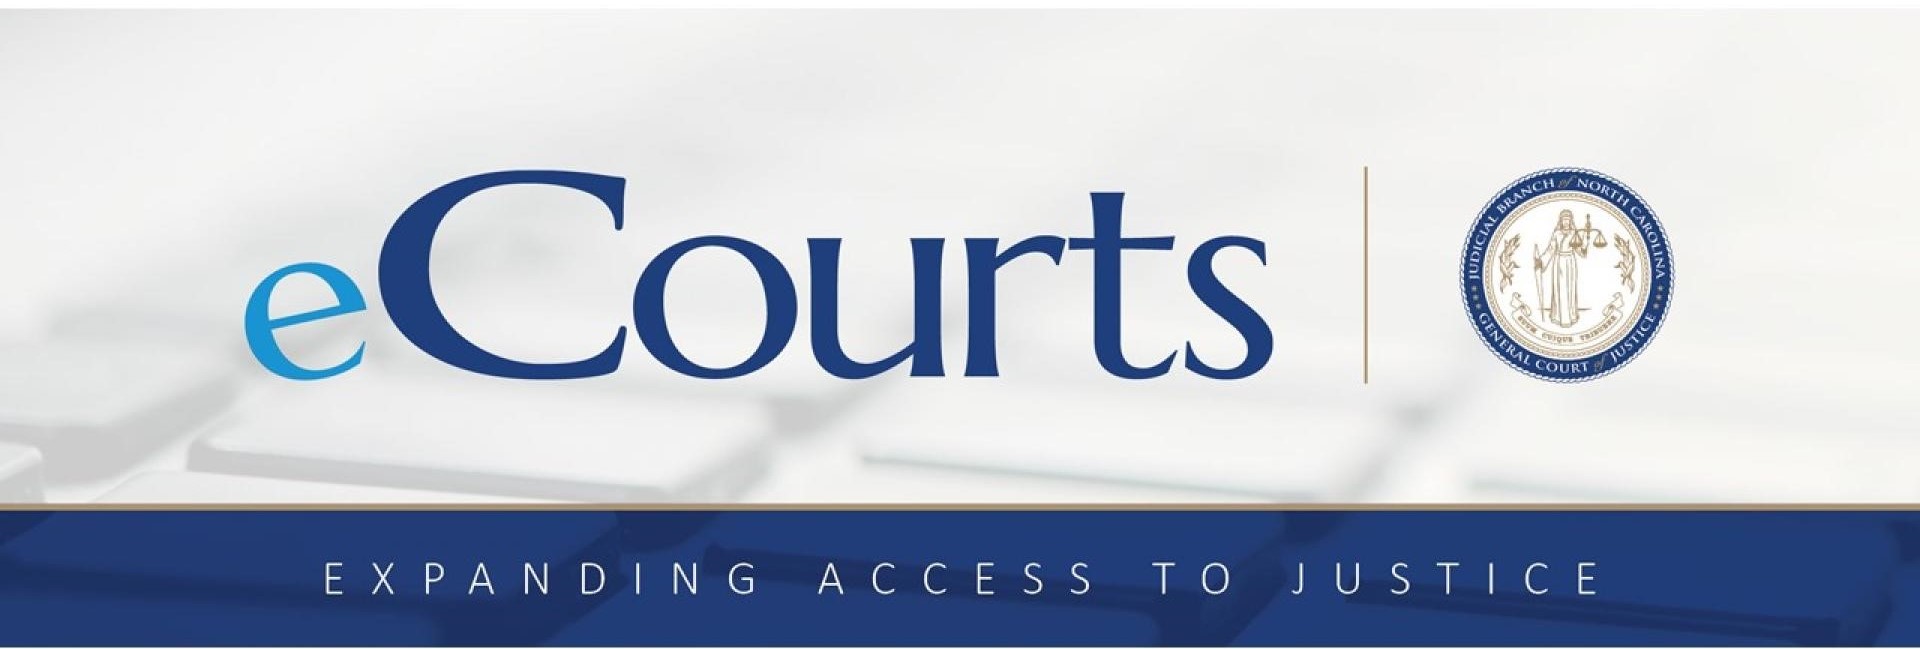 eCourts Mayor acceso a la justicia logo